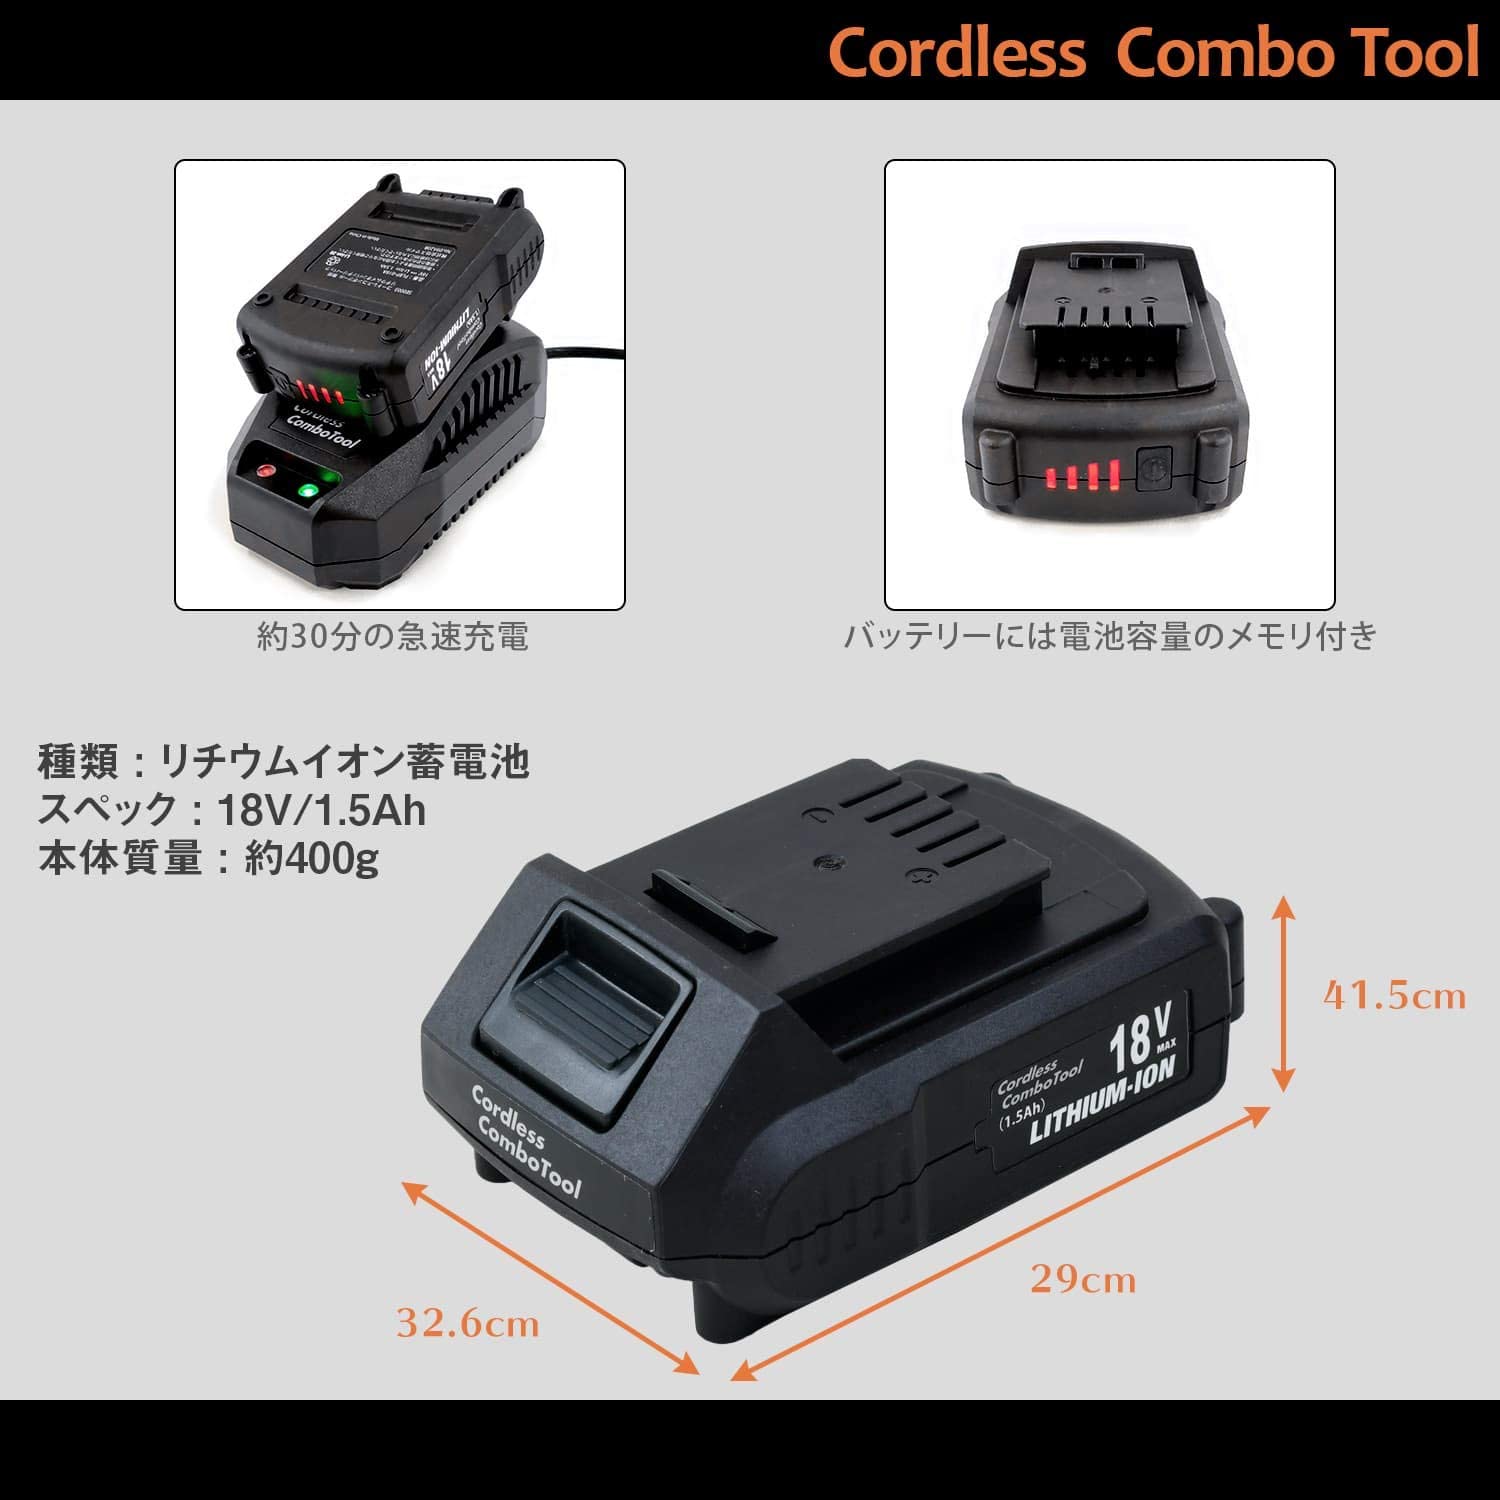 コードレスコンボツール SE0003用 18V電池パック 高圧洗浄機アタッチメント まとめ買いセット SE0003-03/PLBP-018A スマイル